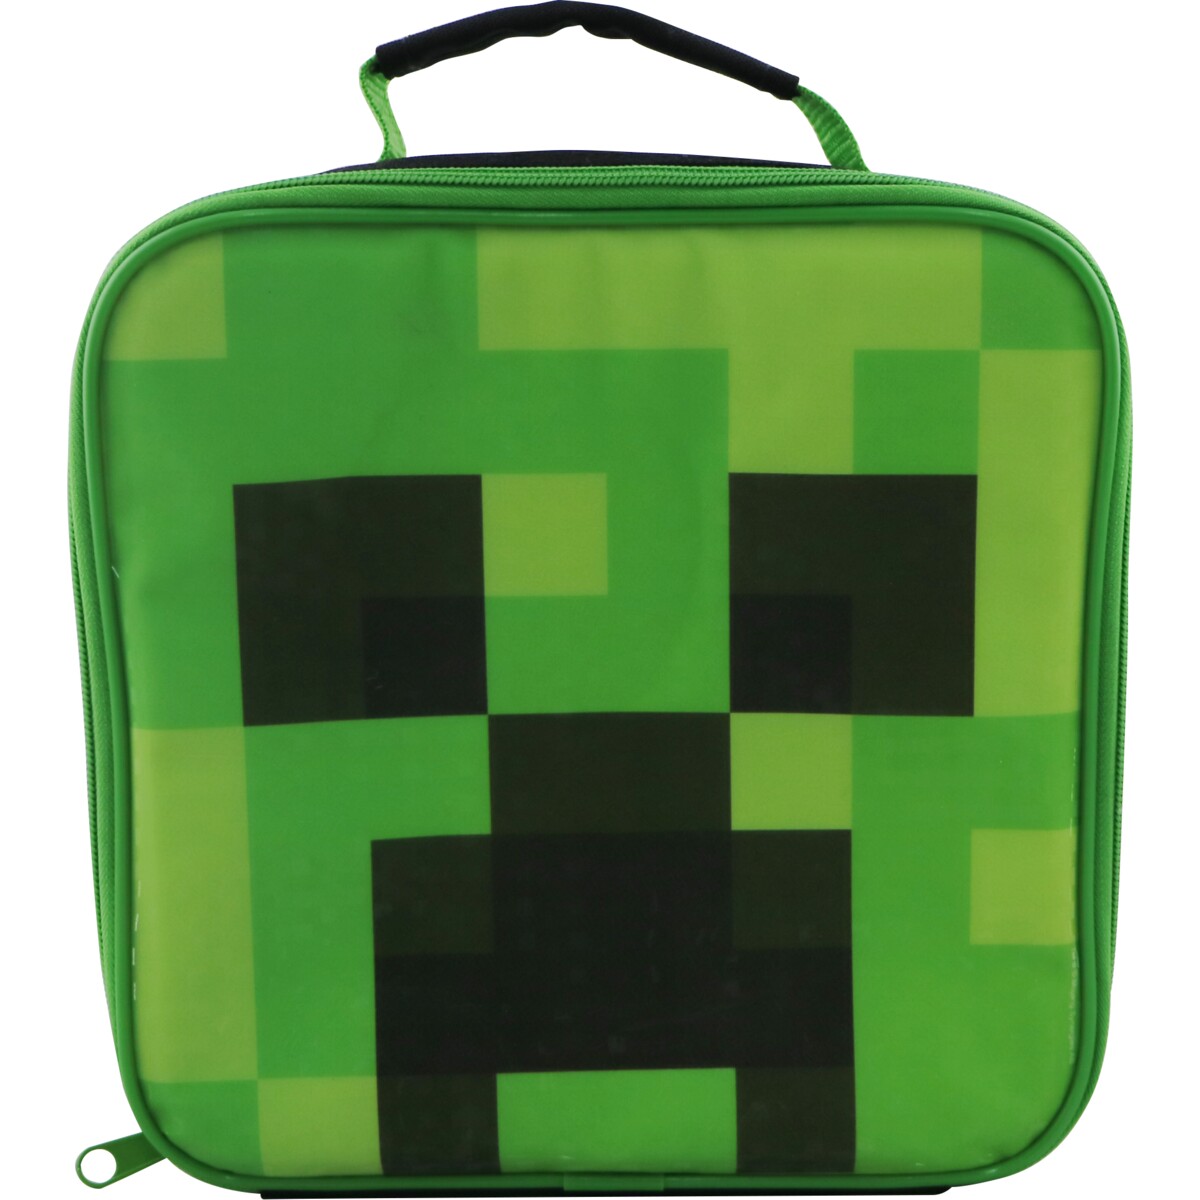 Minecraft Creeper Lunchbag - Ajándéktárgyak Ajándéktárgyak